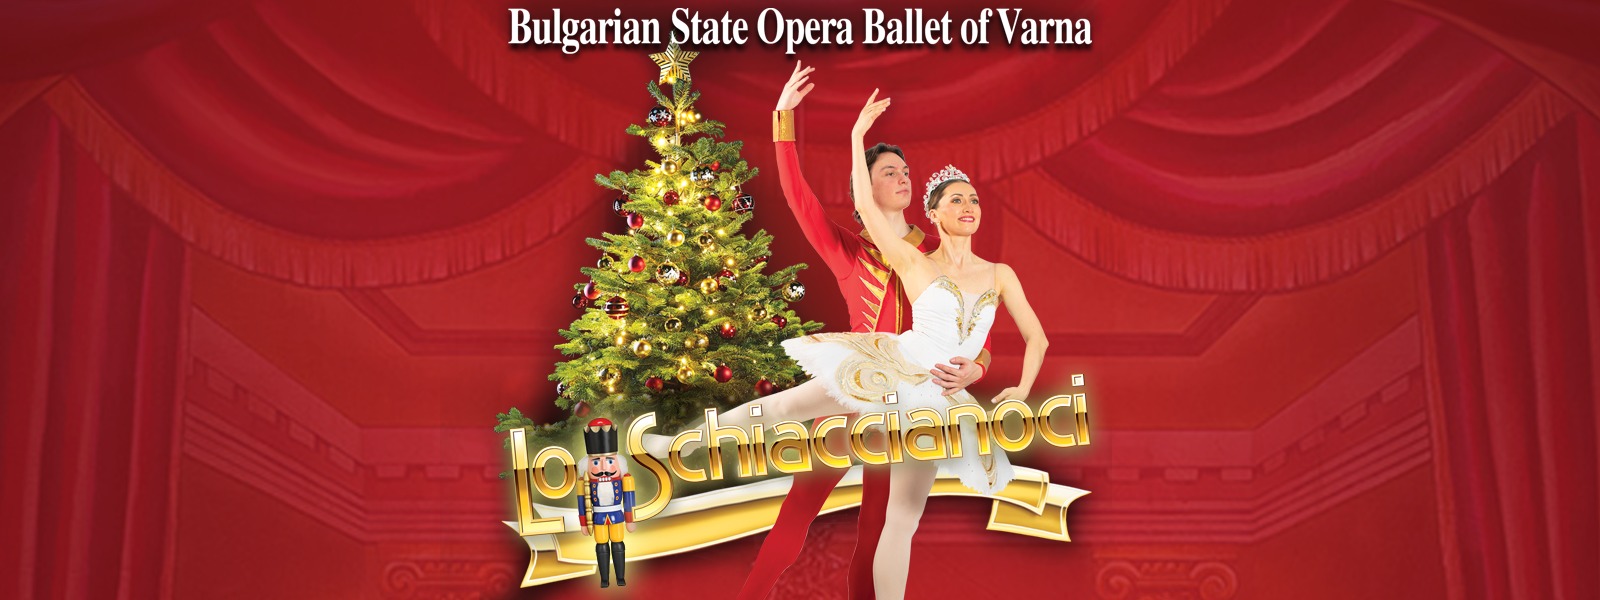 Lo Schiaccianoci a Mestre con il Bulgarian State Opera Ballet of Varna